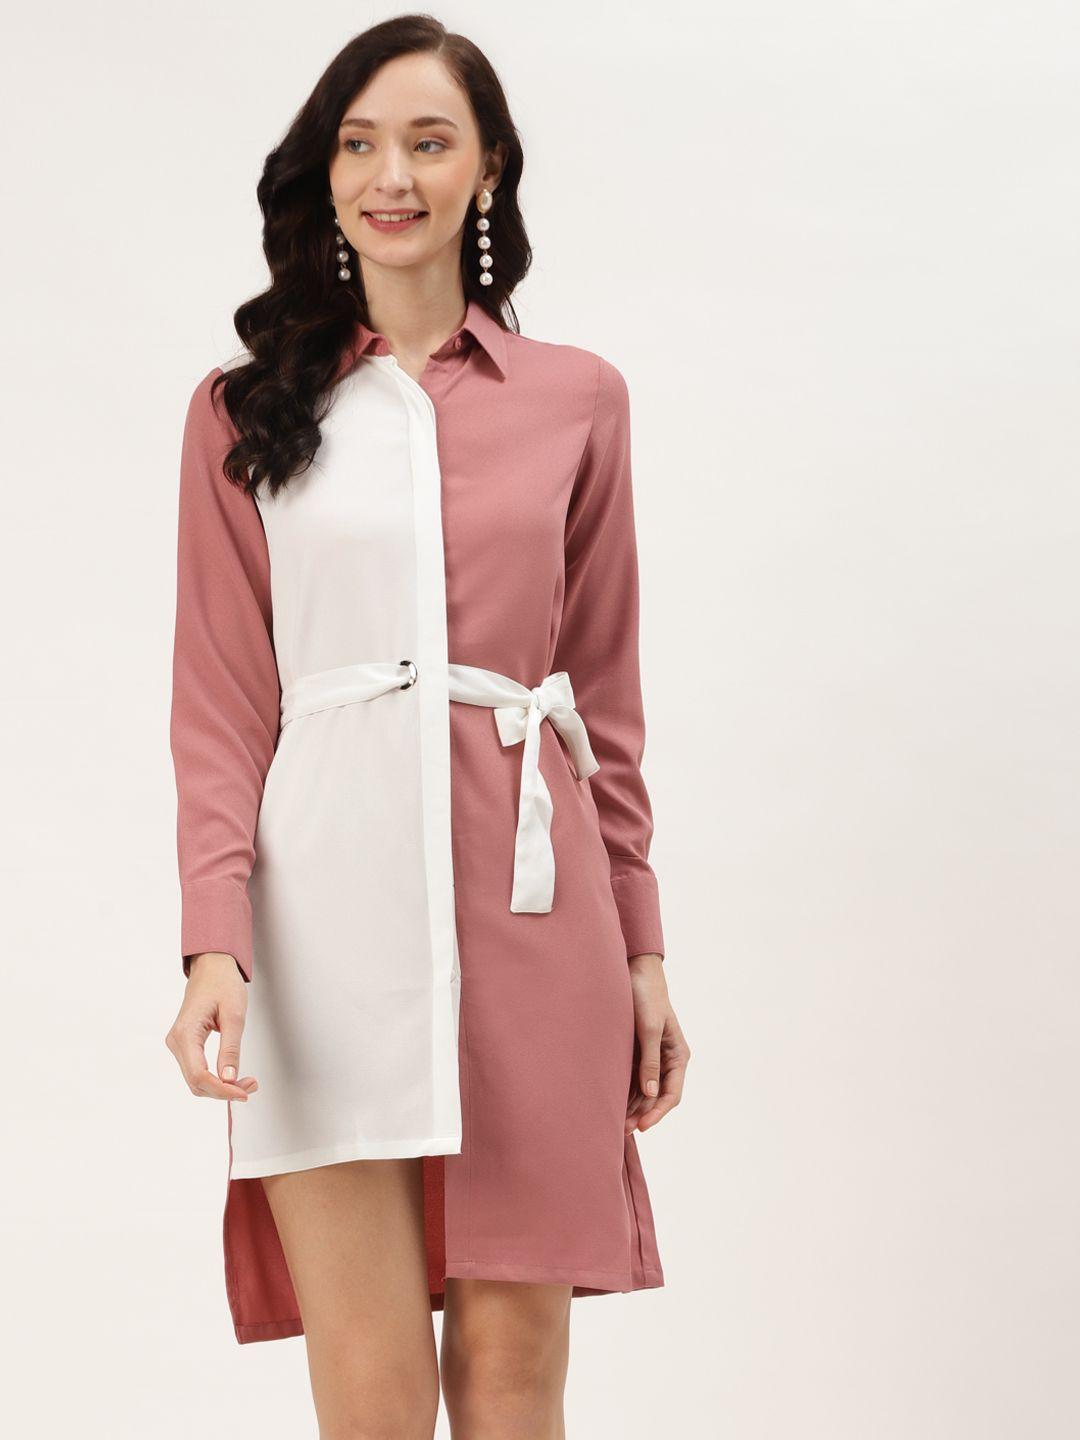 label regalia pink & white colourblocked crepe shirt dress